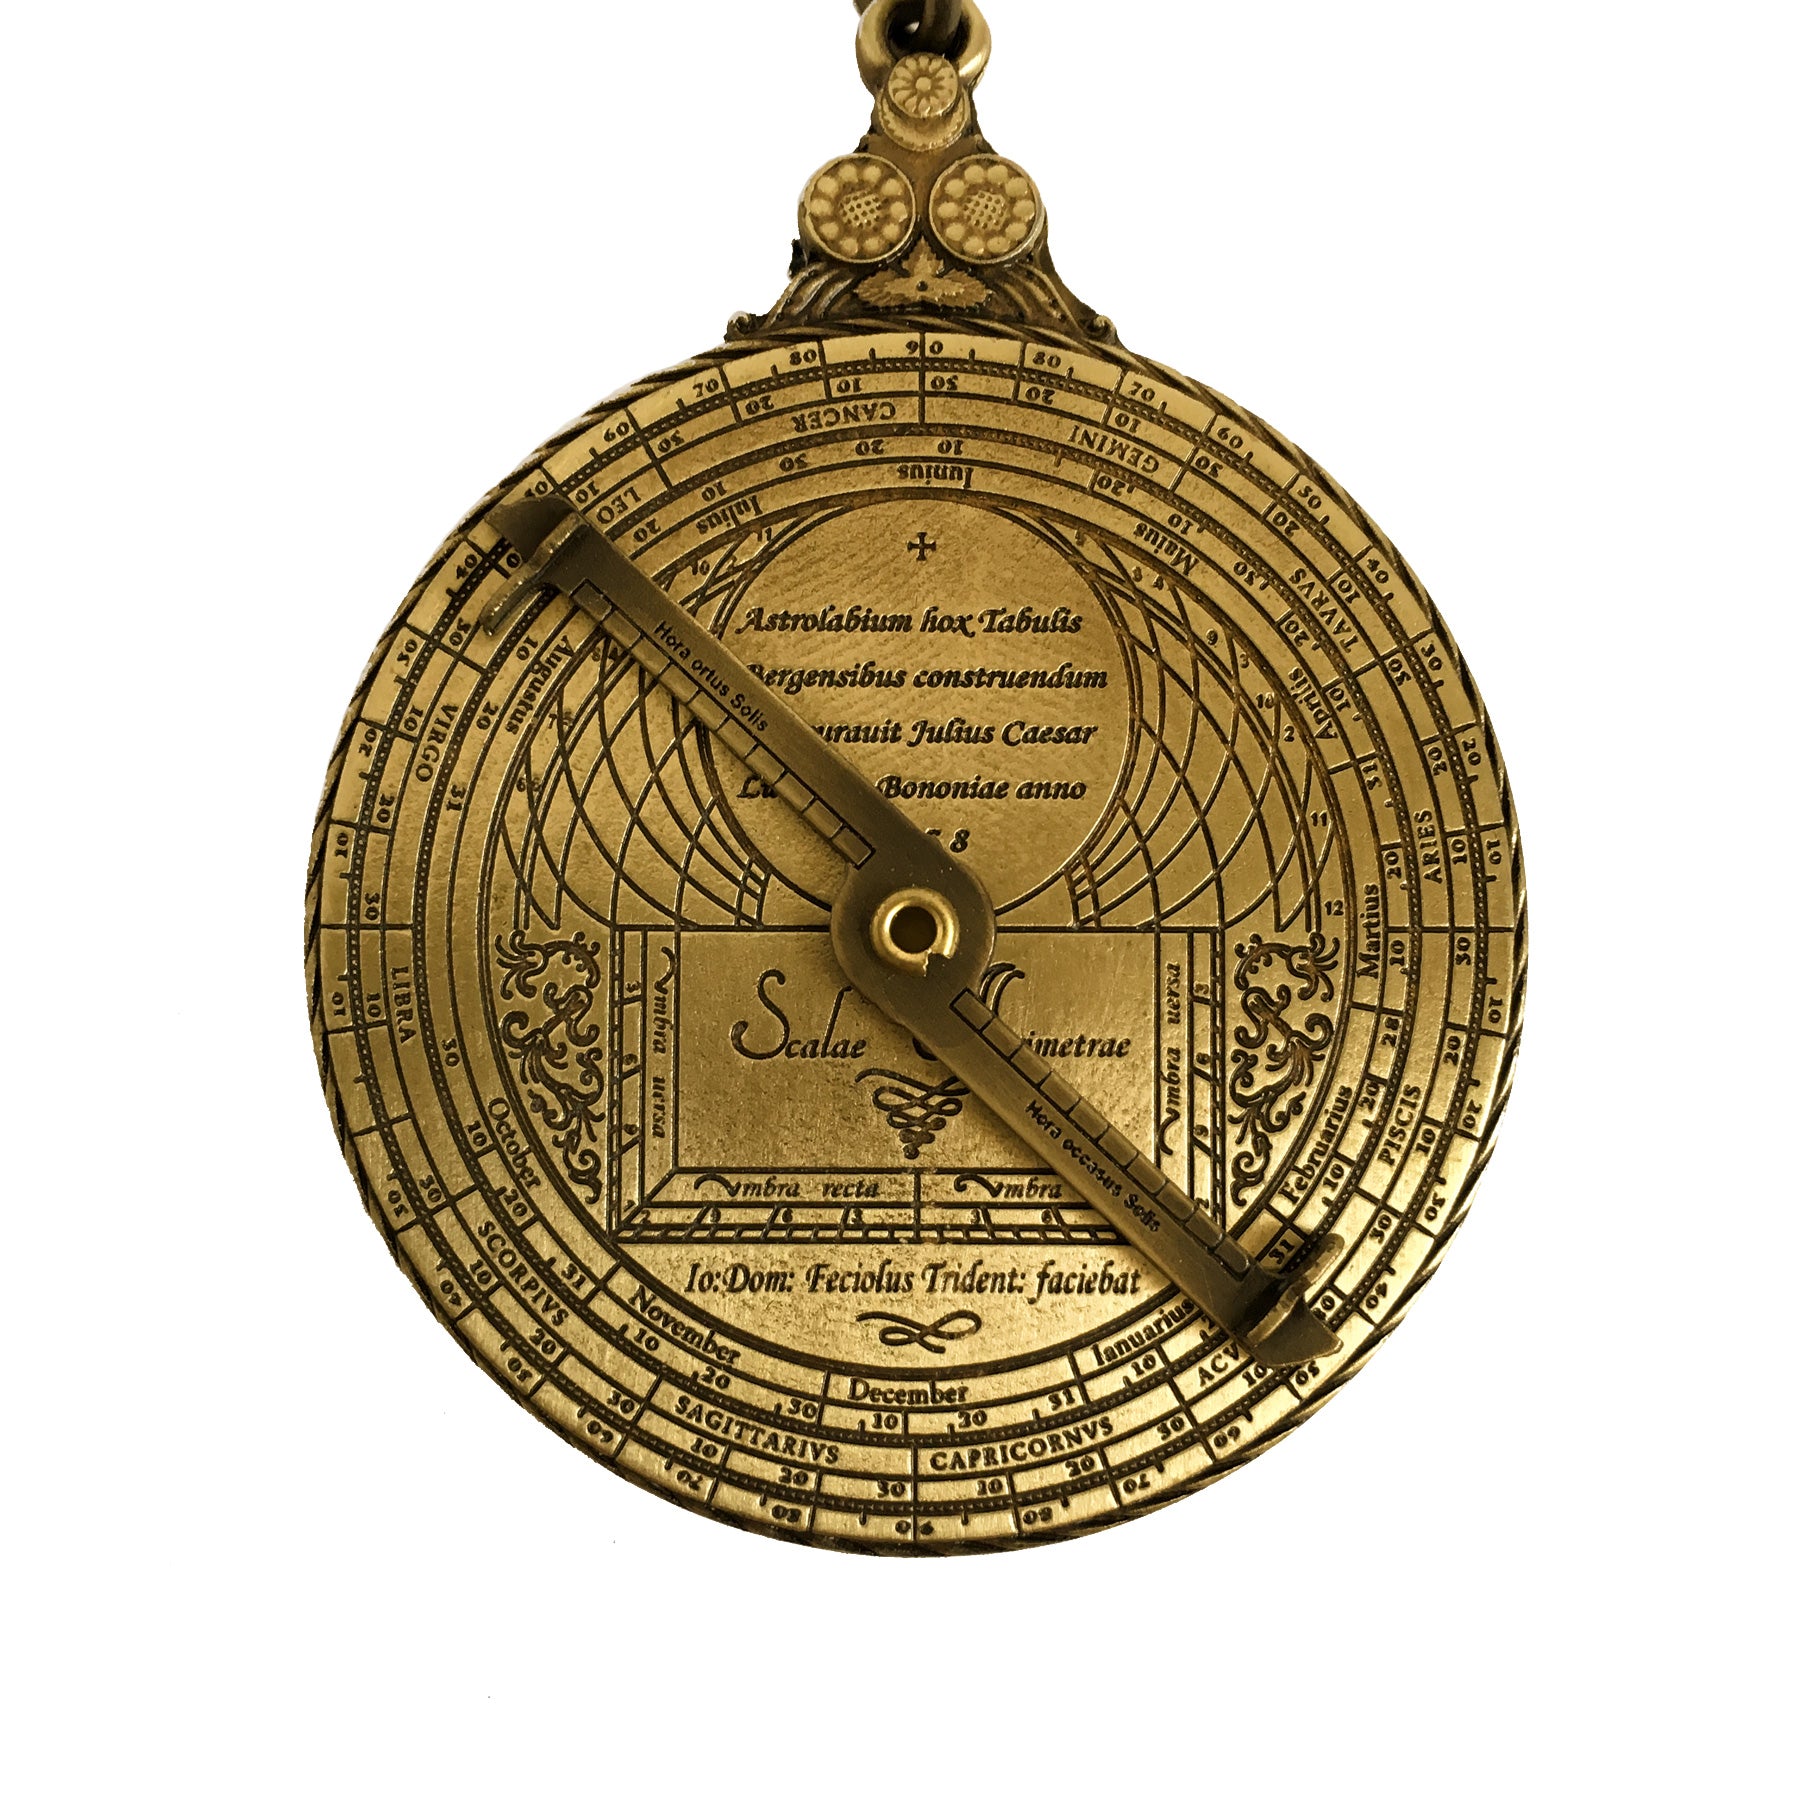 Oxford Mini Astrolabe Key Ring